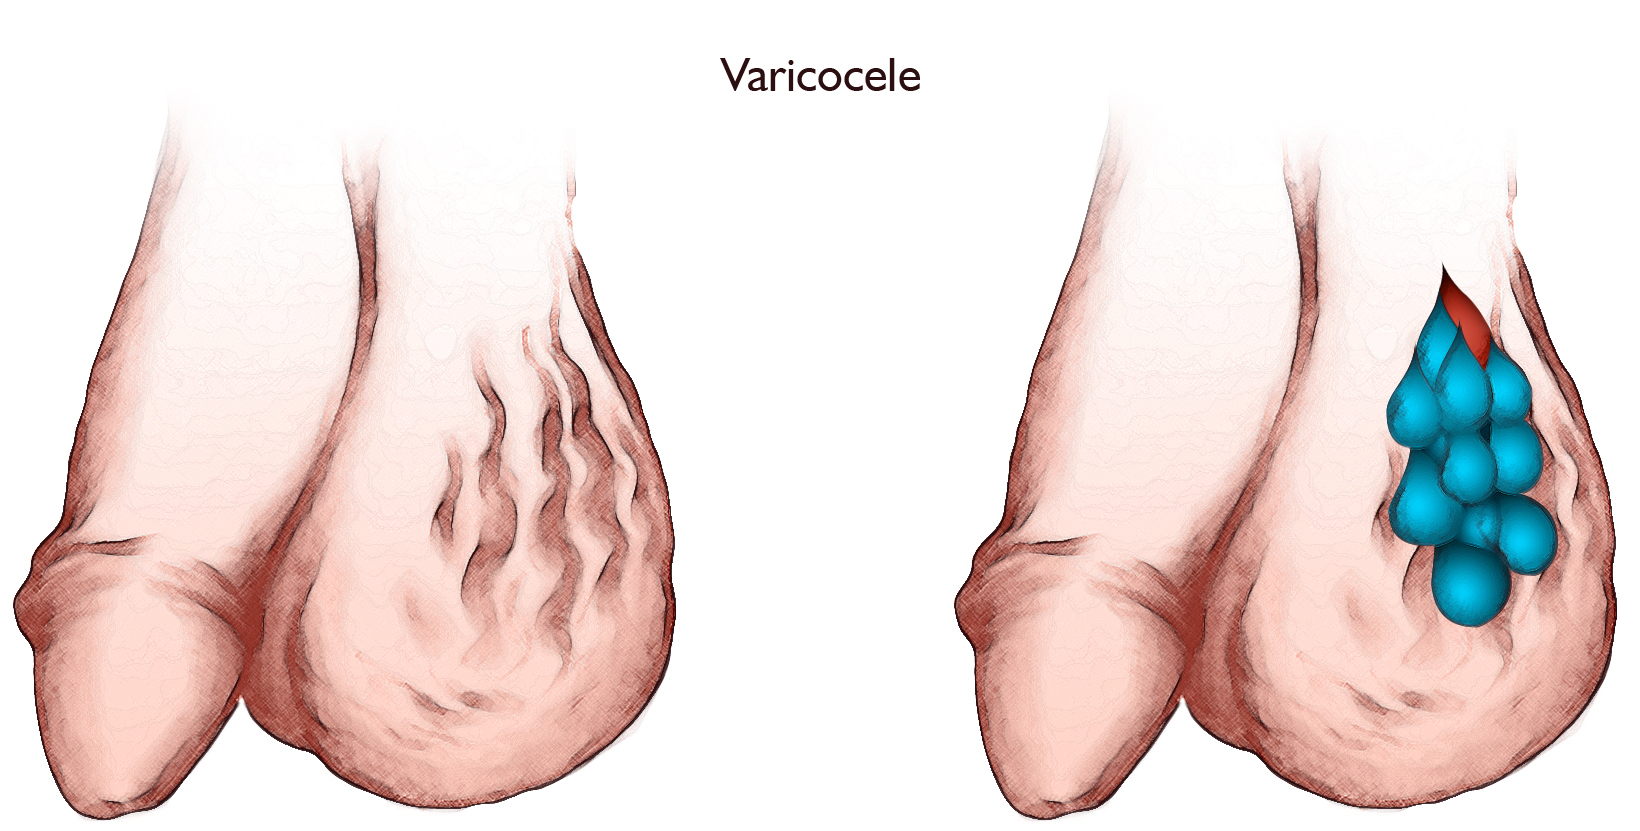 Varicocele: Should You Stop Wearing Underwear?